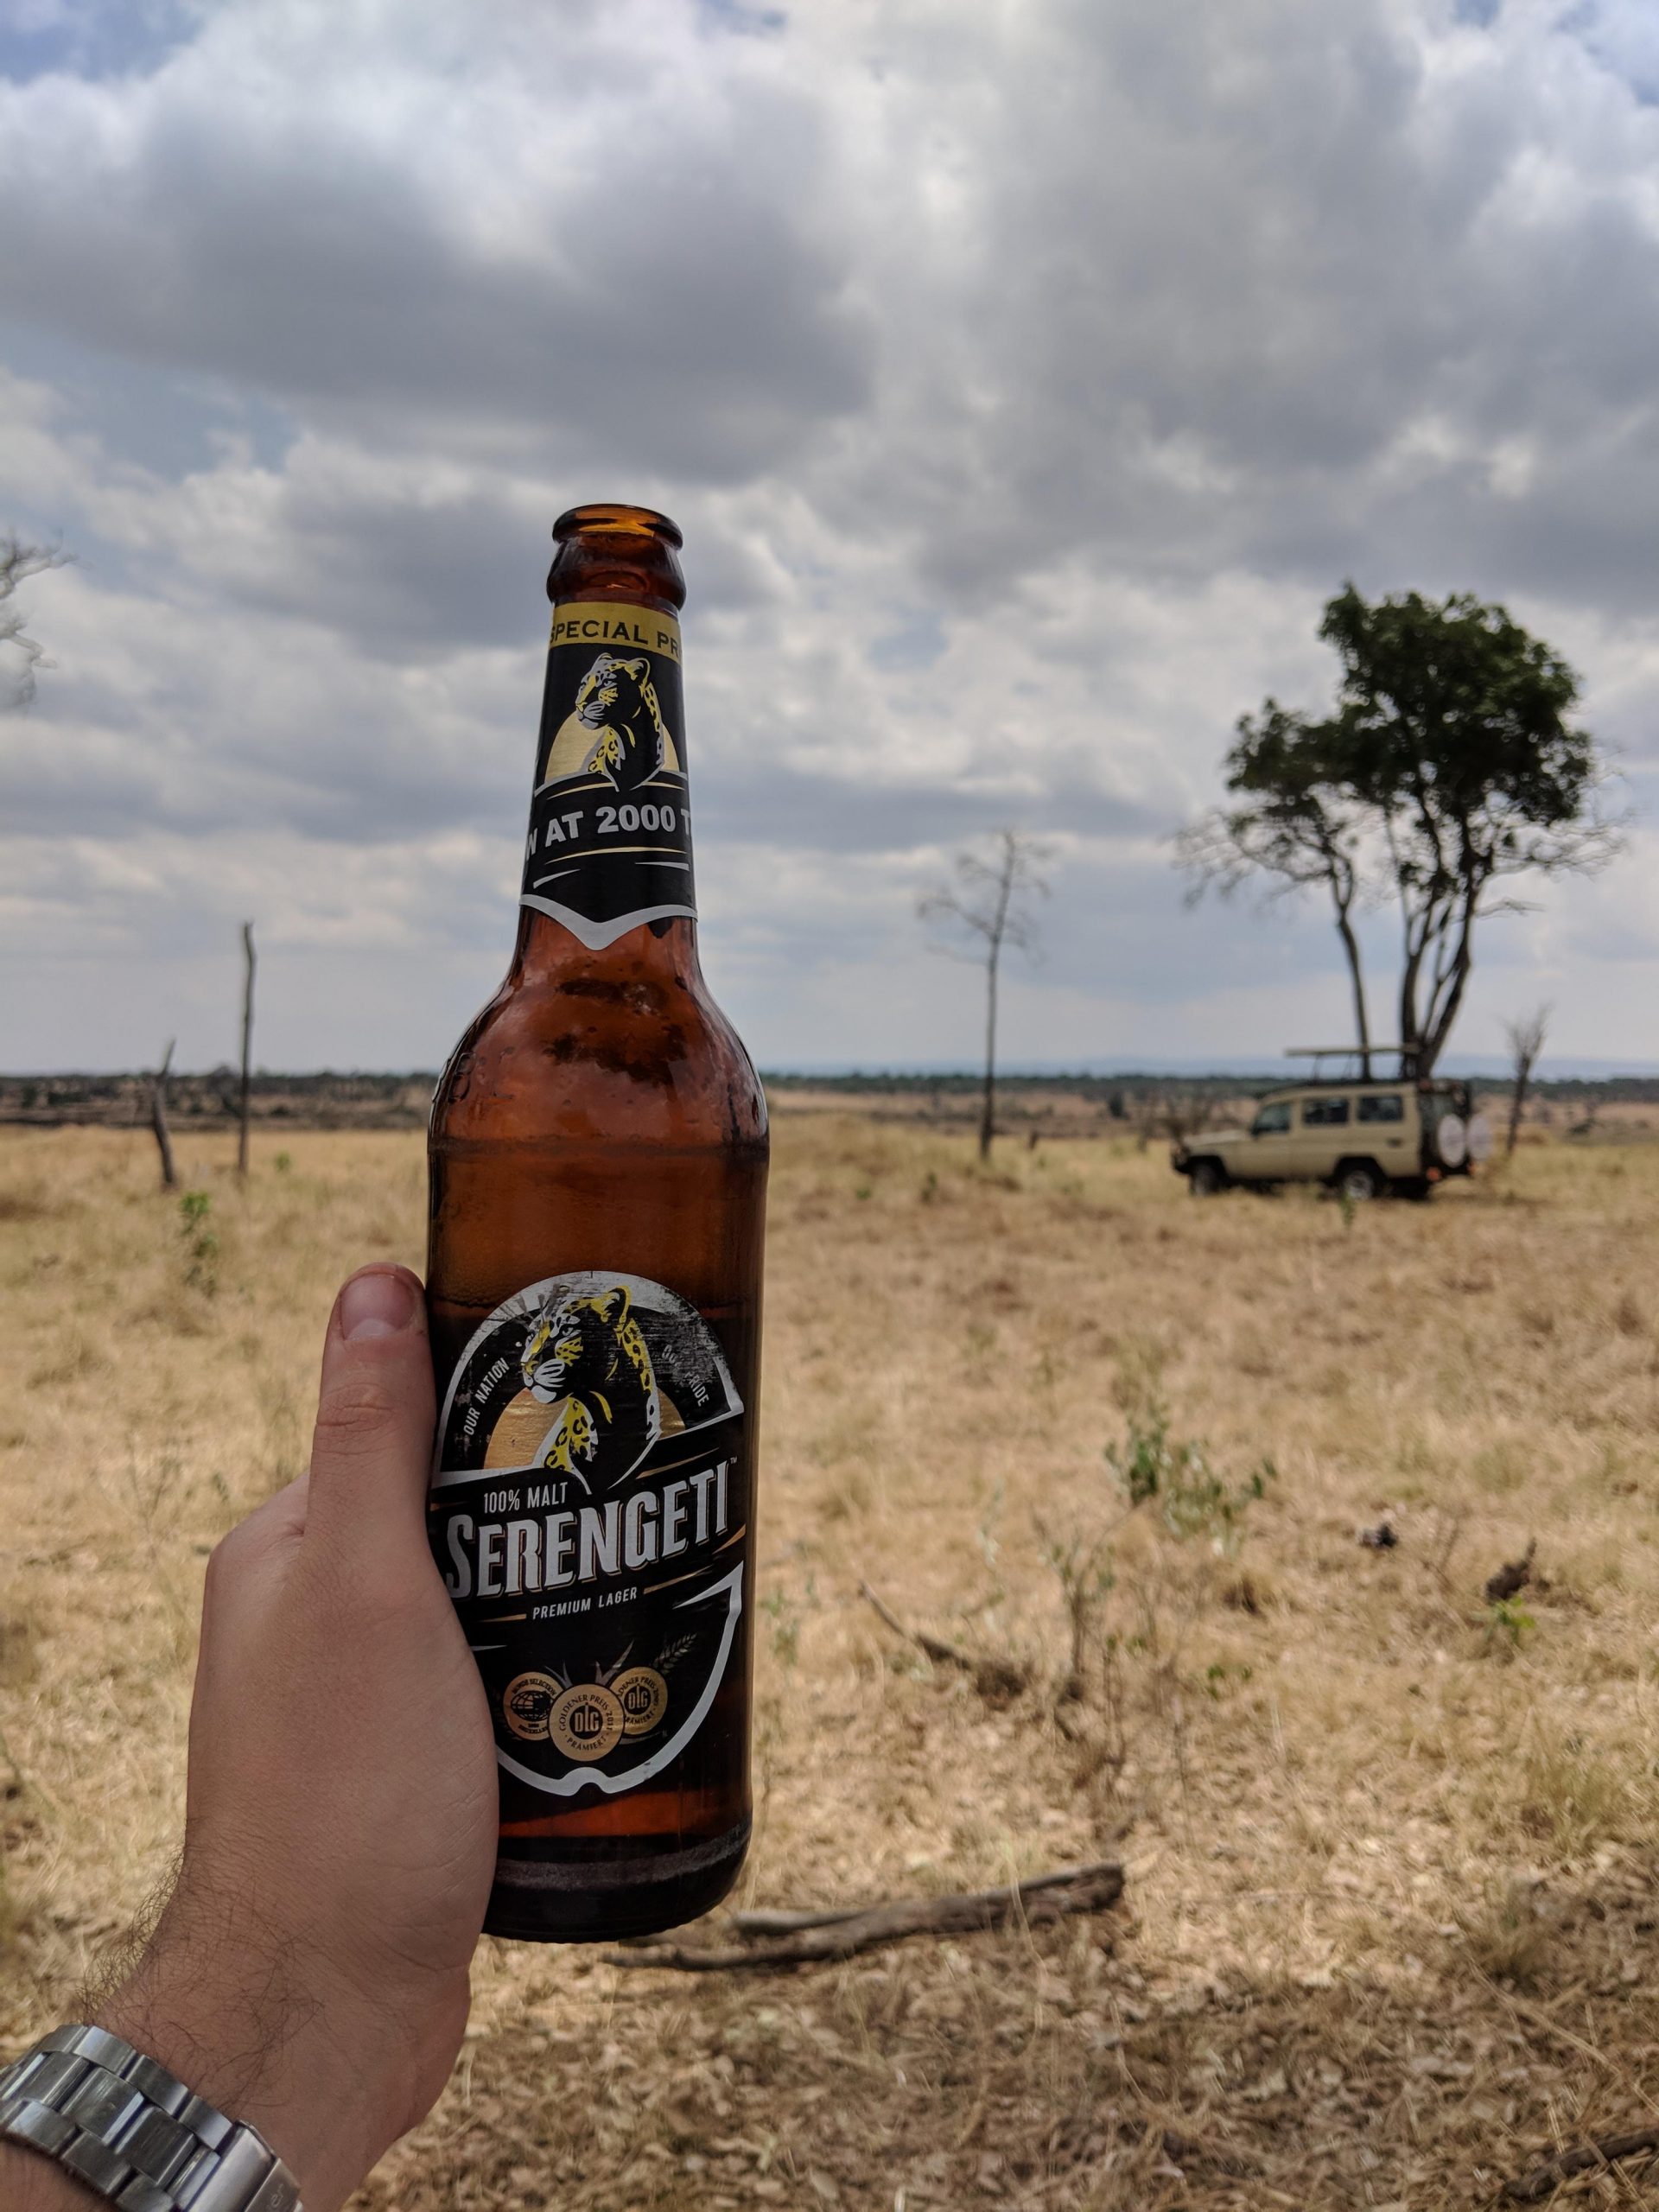 Serengeti beer